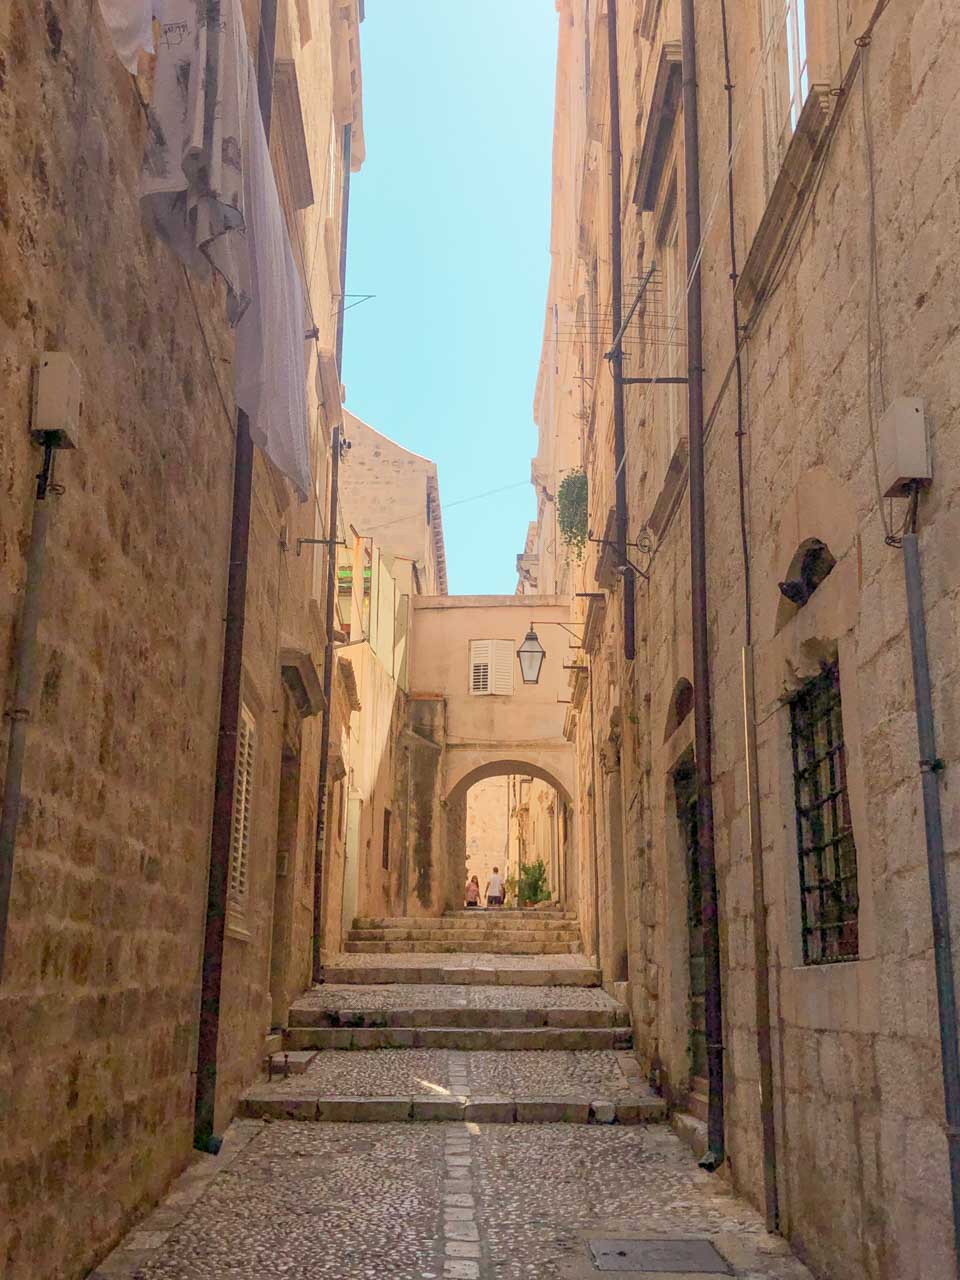 Cobblestone street in Dubrovnik Old Town